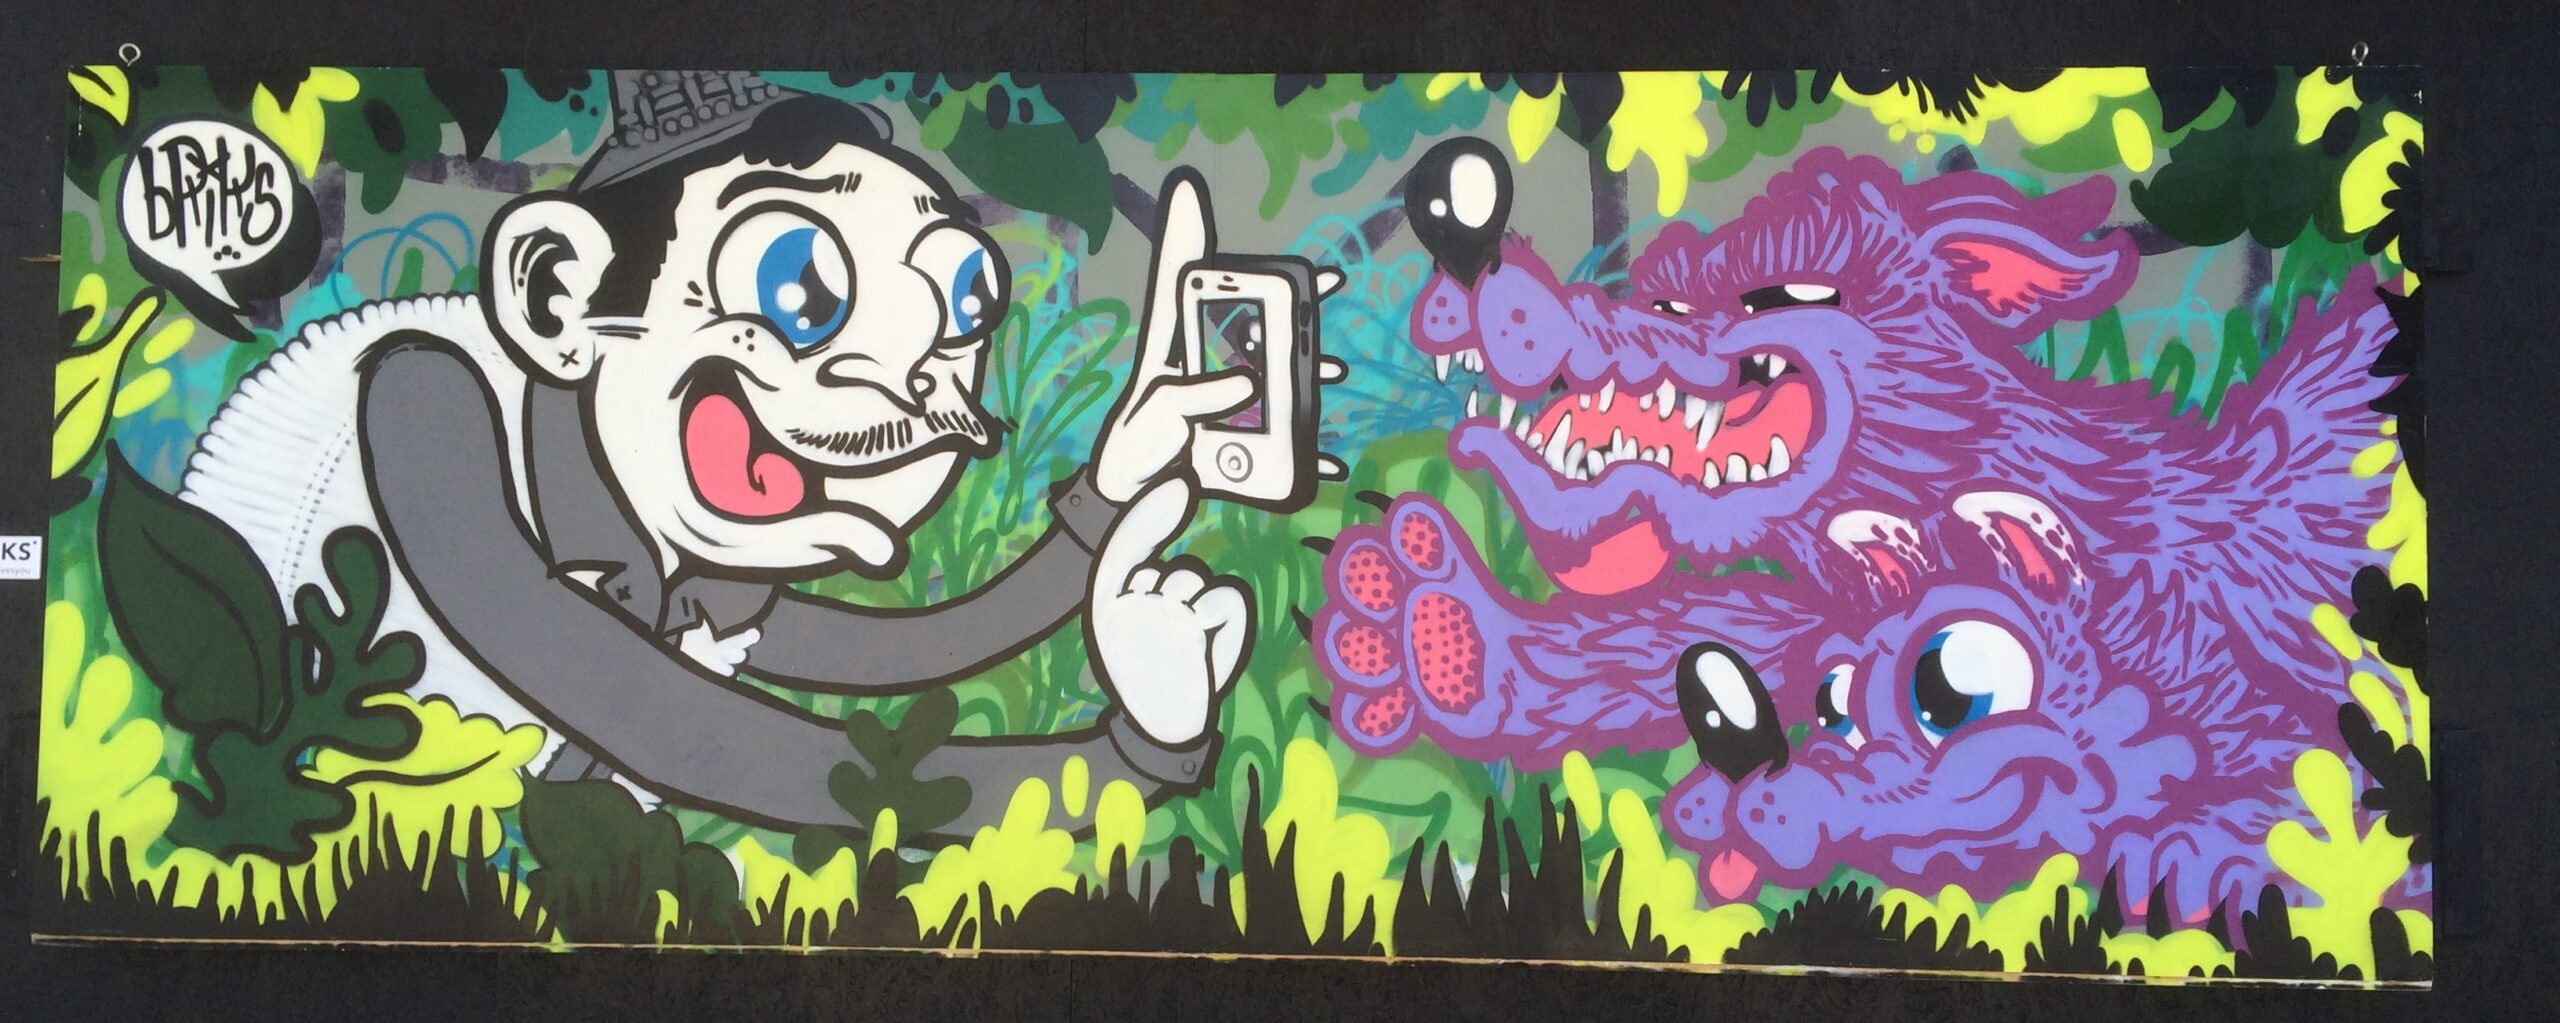 Murals, street art, graffiti in Austin Texas